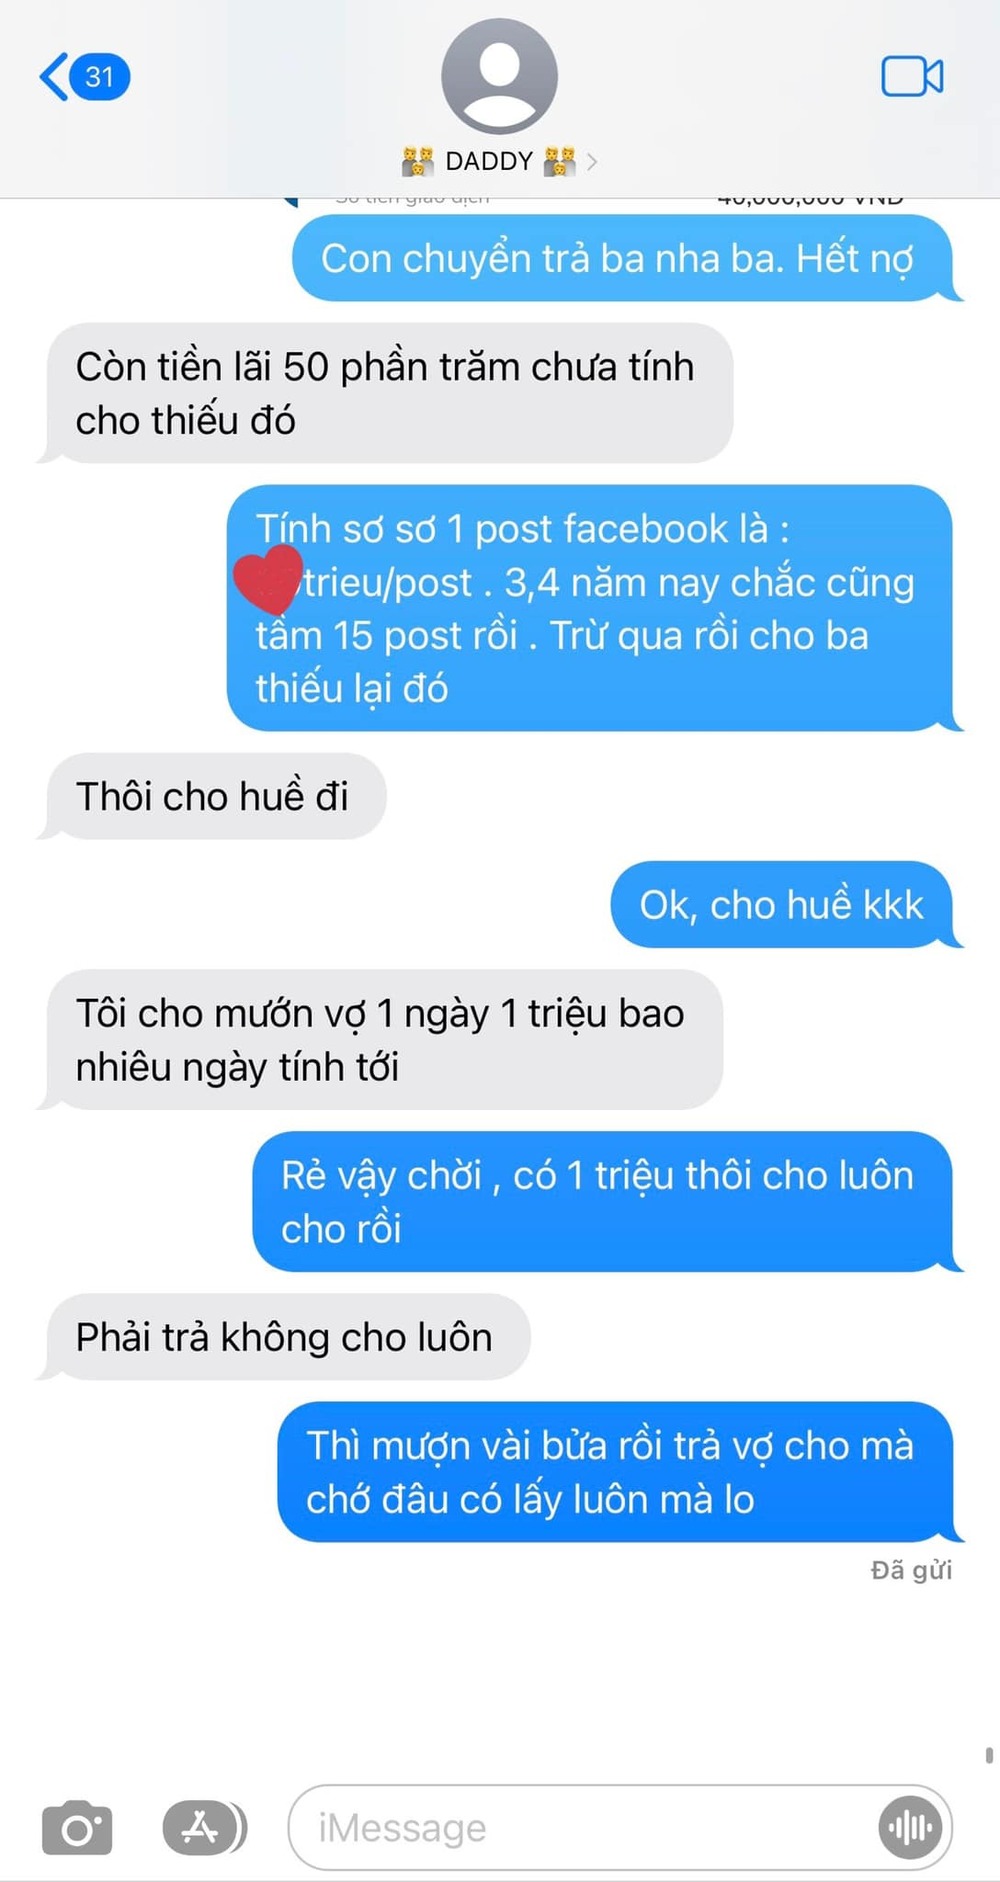  
Tin nhắn hài hước giữa Vân Trang và bố khiến nhiều người ngưỡng mộ. (Ảnh: Facebook Vân Trang)